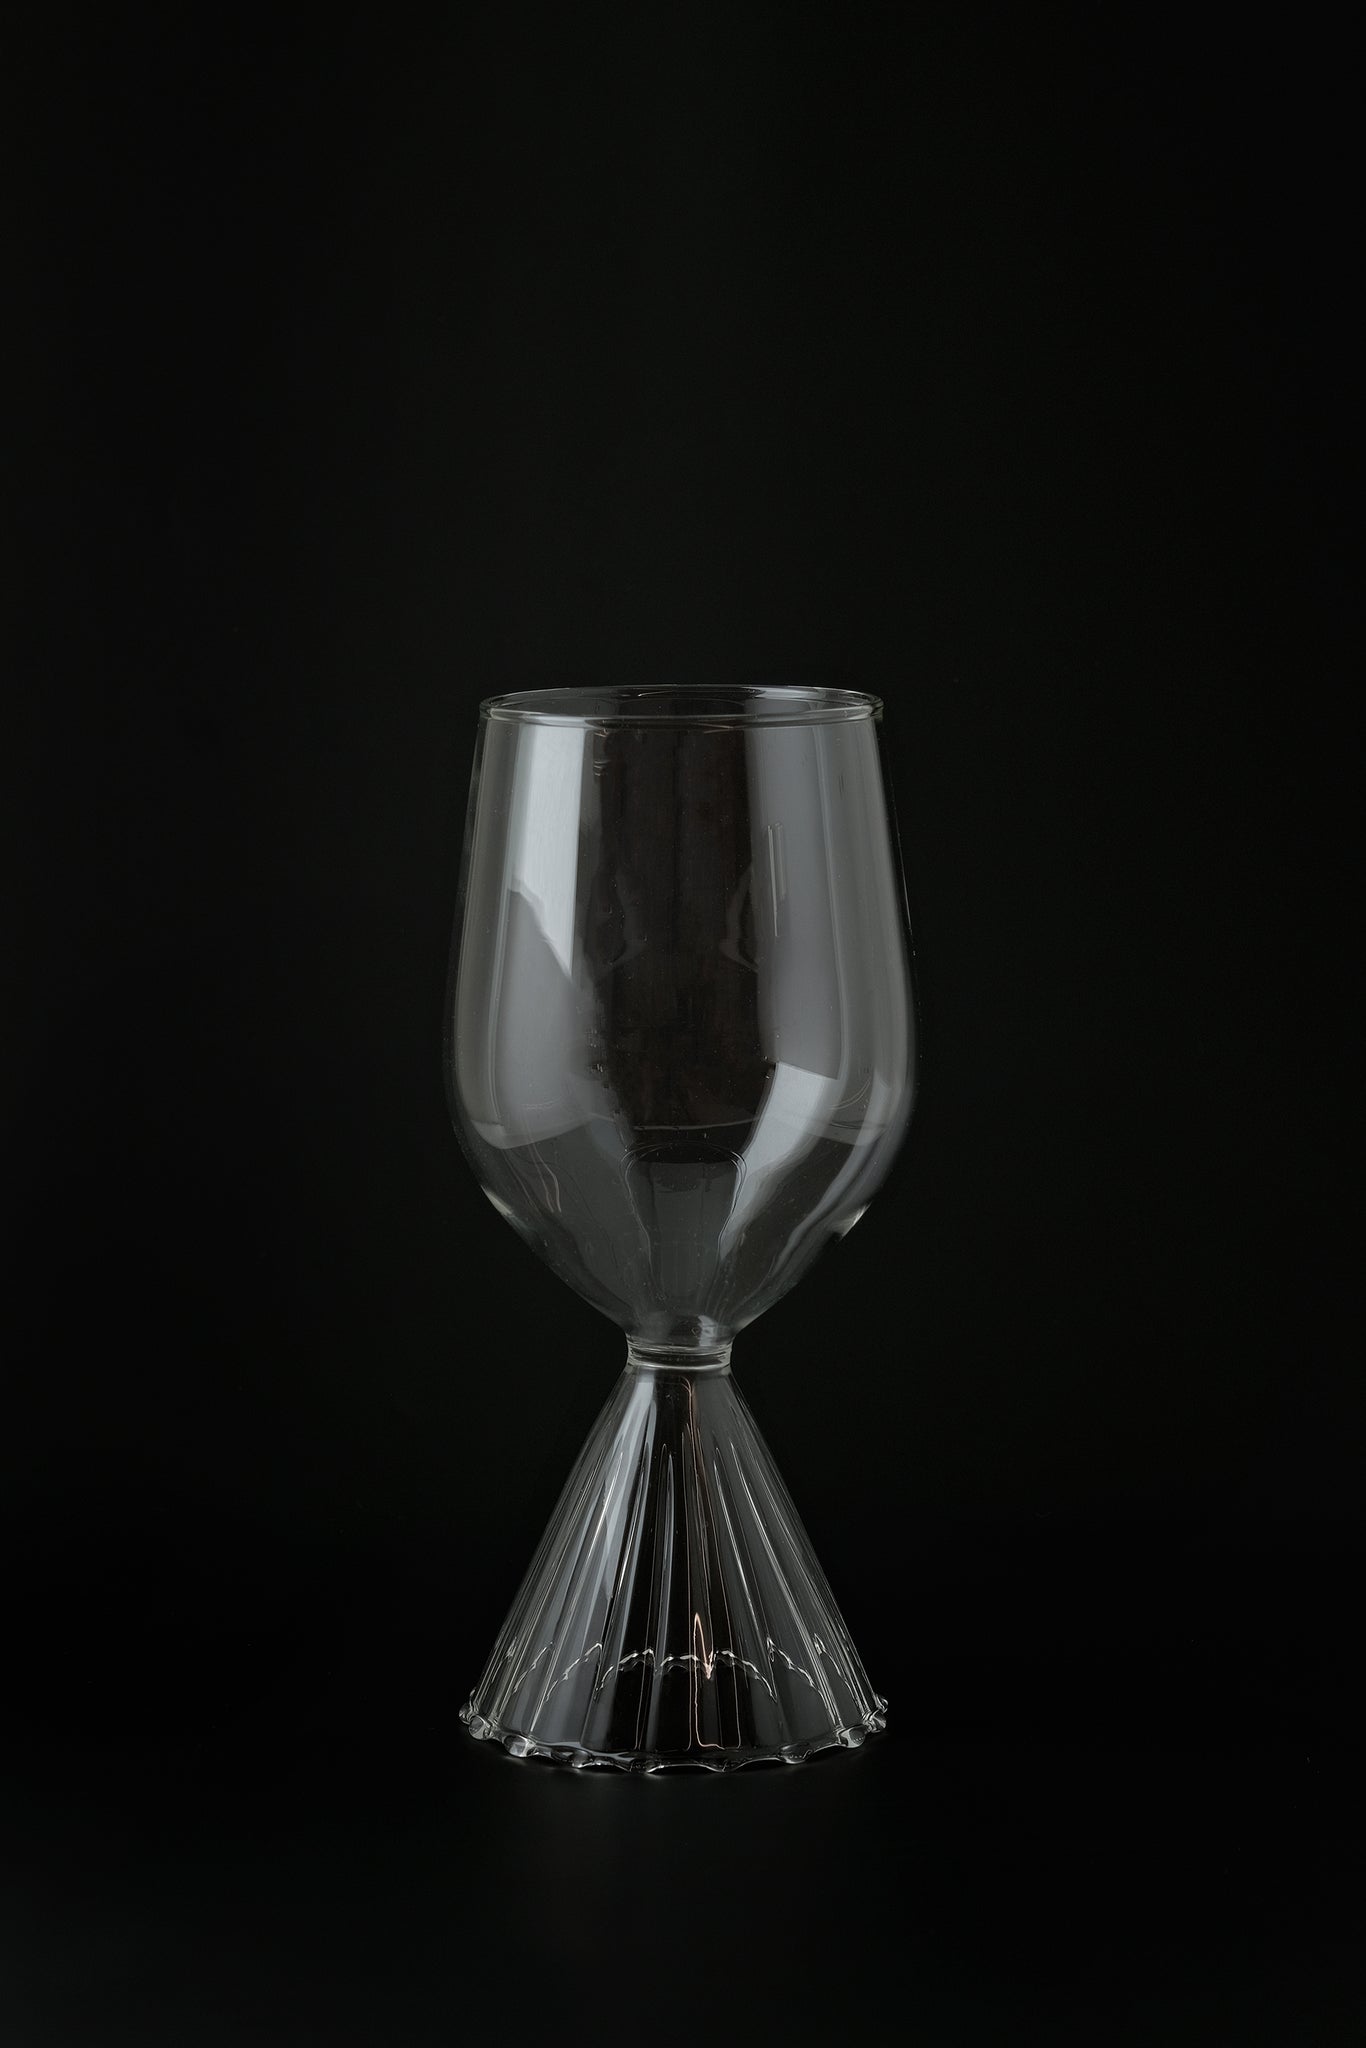 Tutu white wine glass-Ichendorf-KIOSK48TH